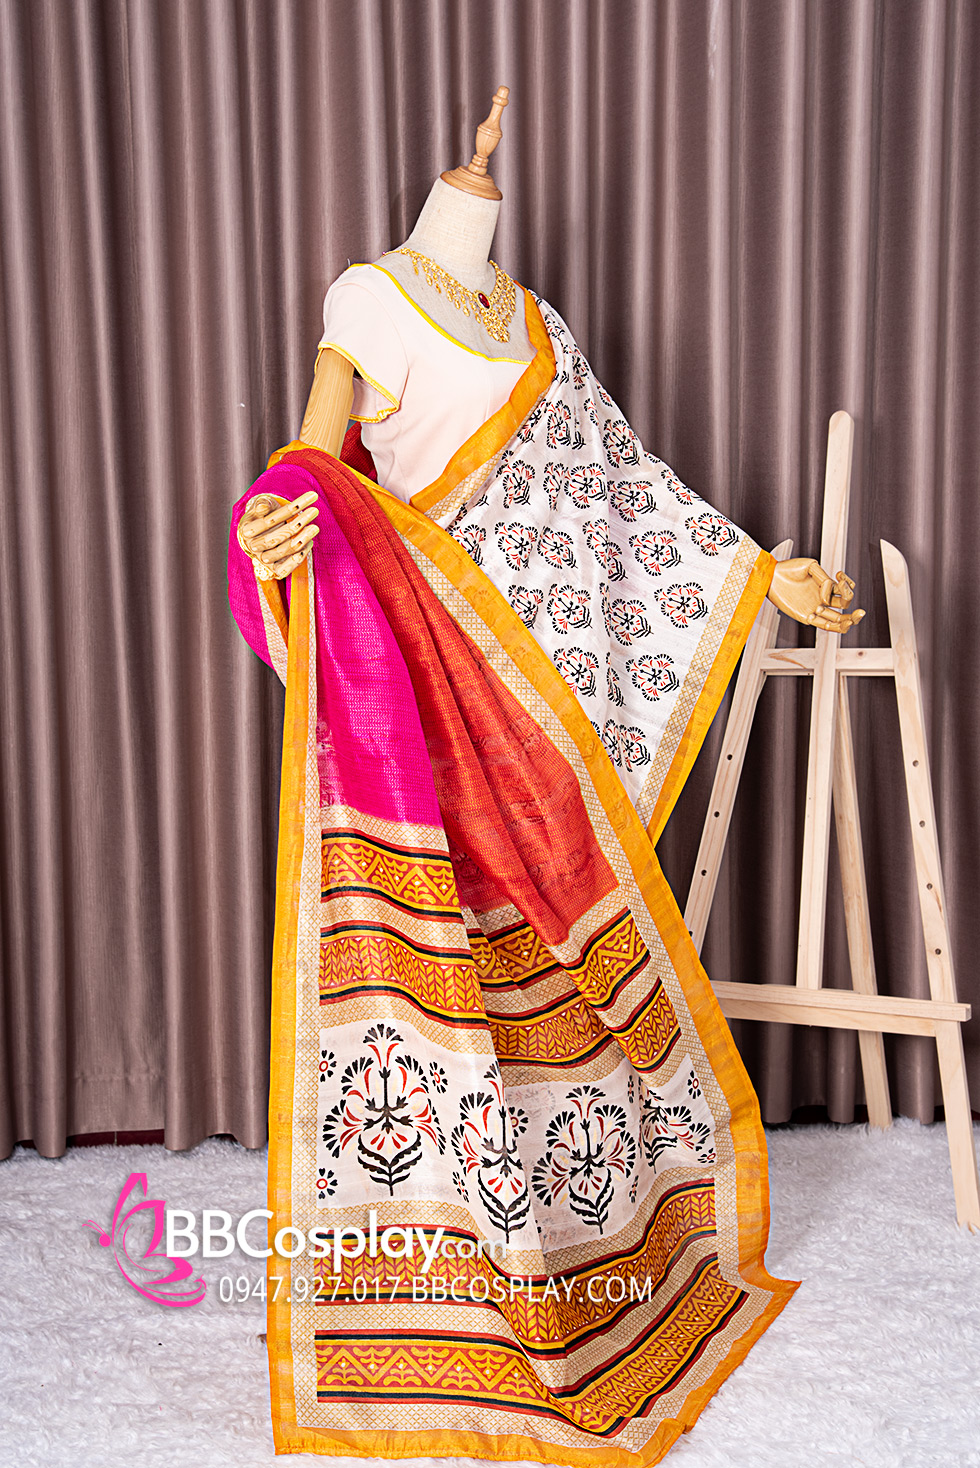 Nền Người Phụ Nữ Trong Trang Phục Sari Ấn Độ Giơ Ngón Tay Cái Lên Văn Hóa  Người Mẫu Cô Gái Hình Chụp Và Hình ảnh Để Tải Về Miễn Phí -